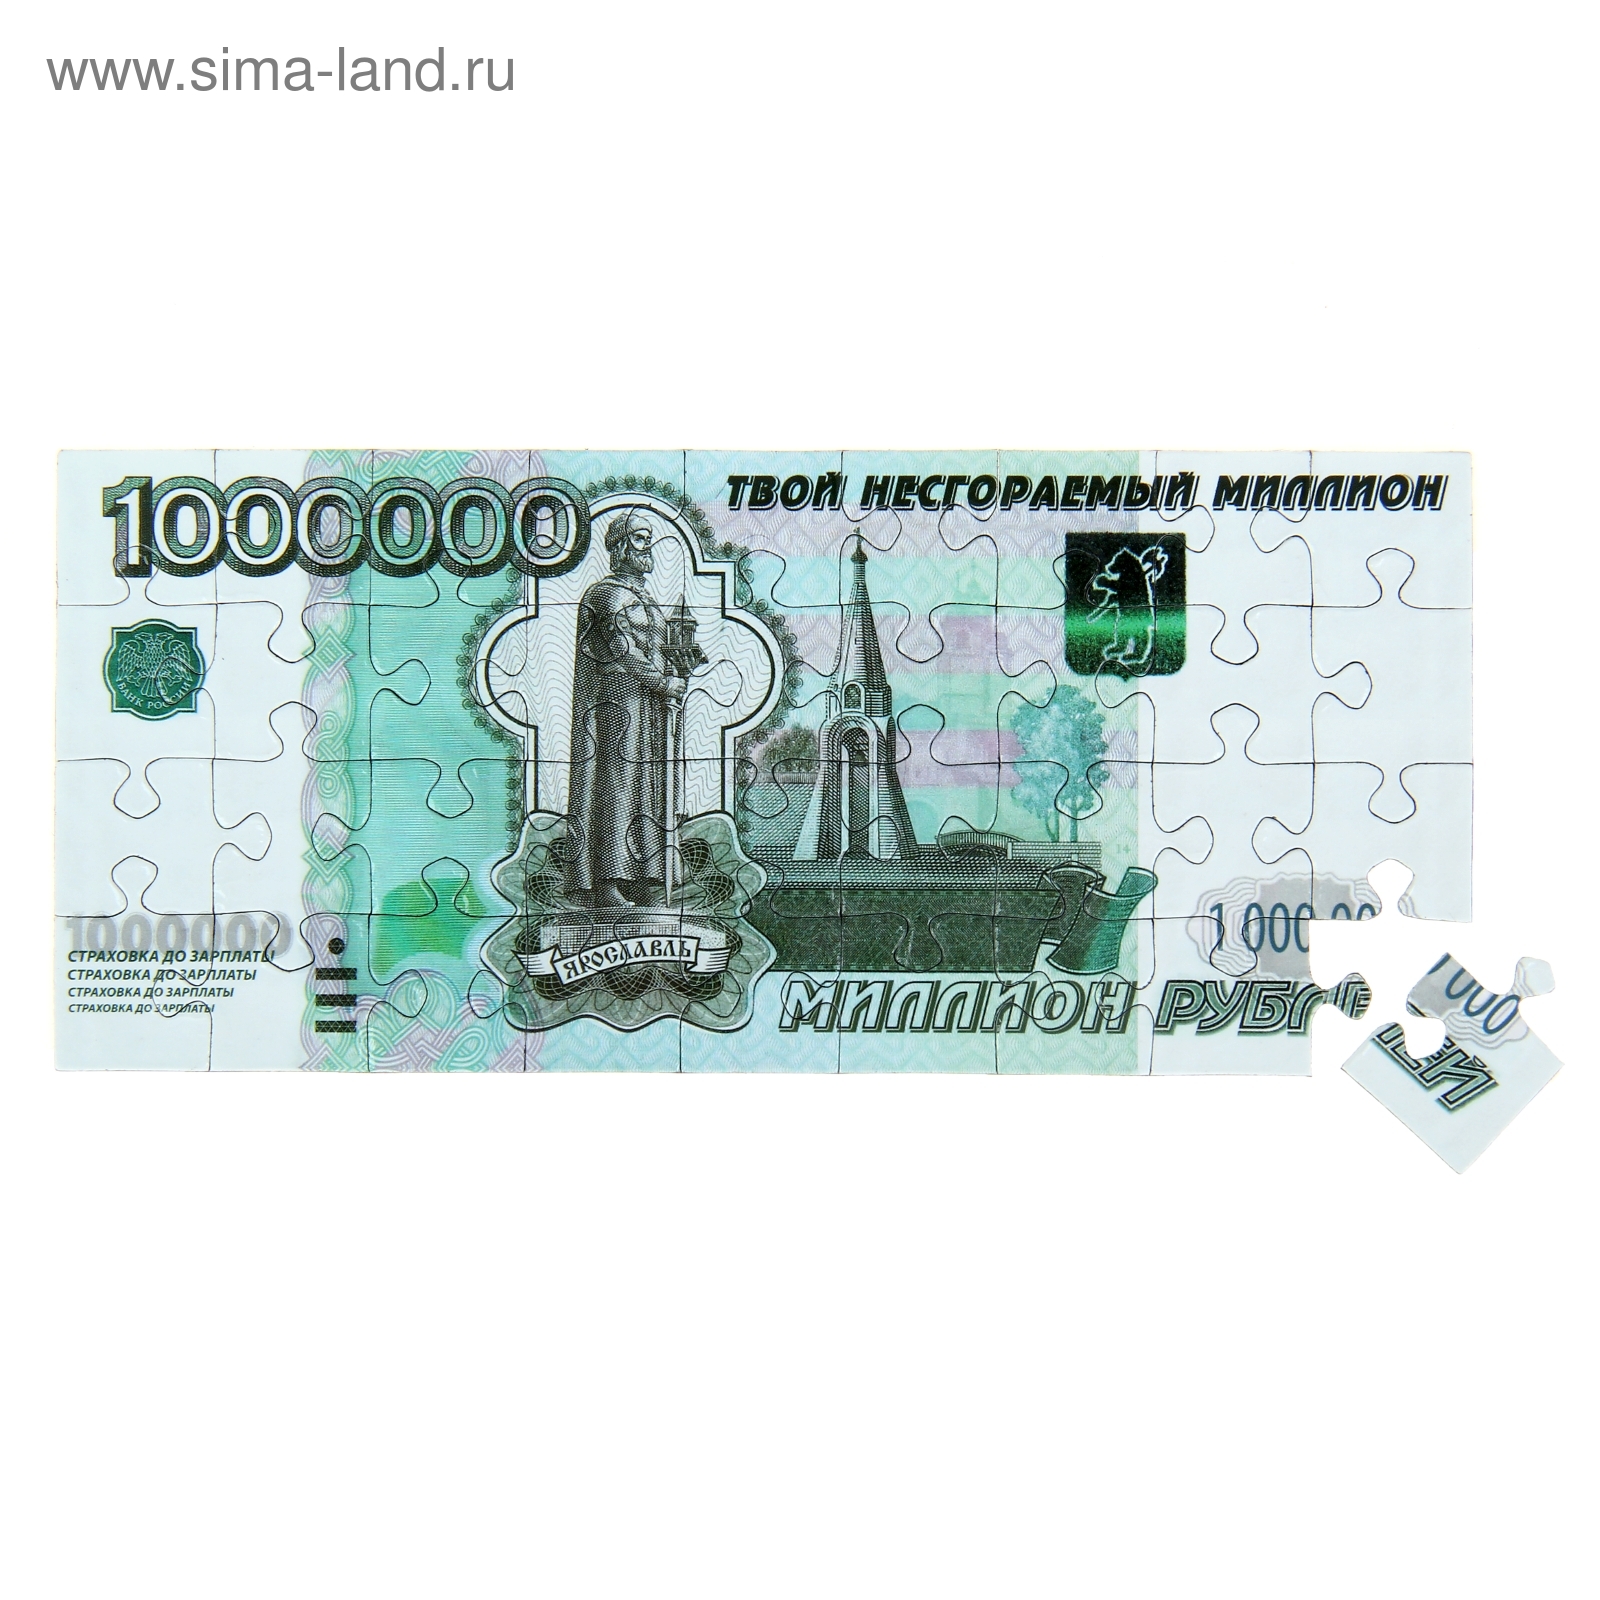 Бизнес за 1 миллион рублей: куда вложить деньги - «СберБизнес»